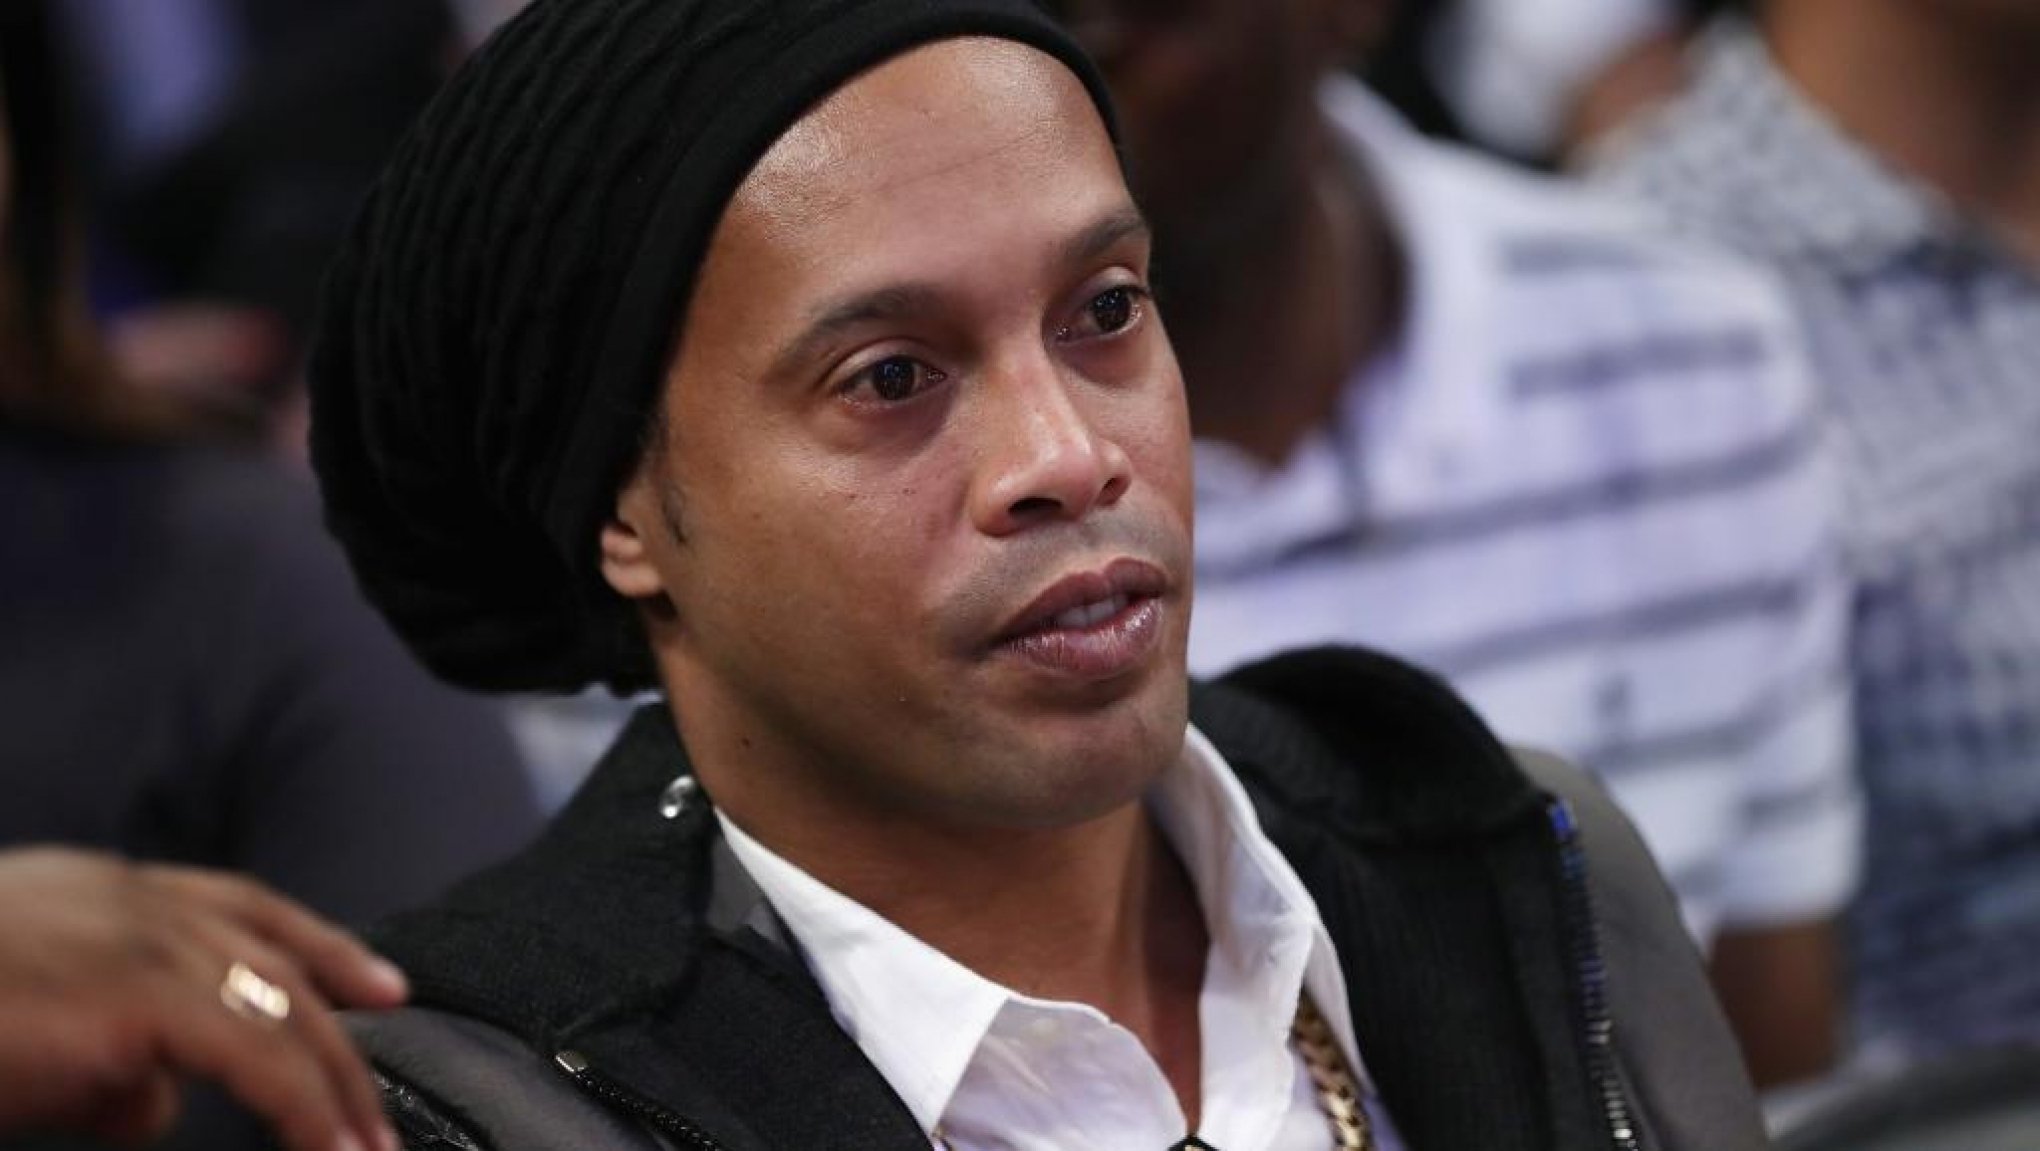 Ronaldinho abriu mão de seis voos para estar na CPI das Pirâmides; aeroporto nega cancelamentos